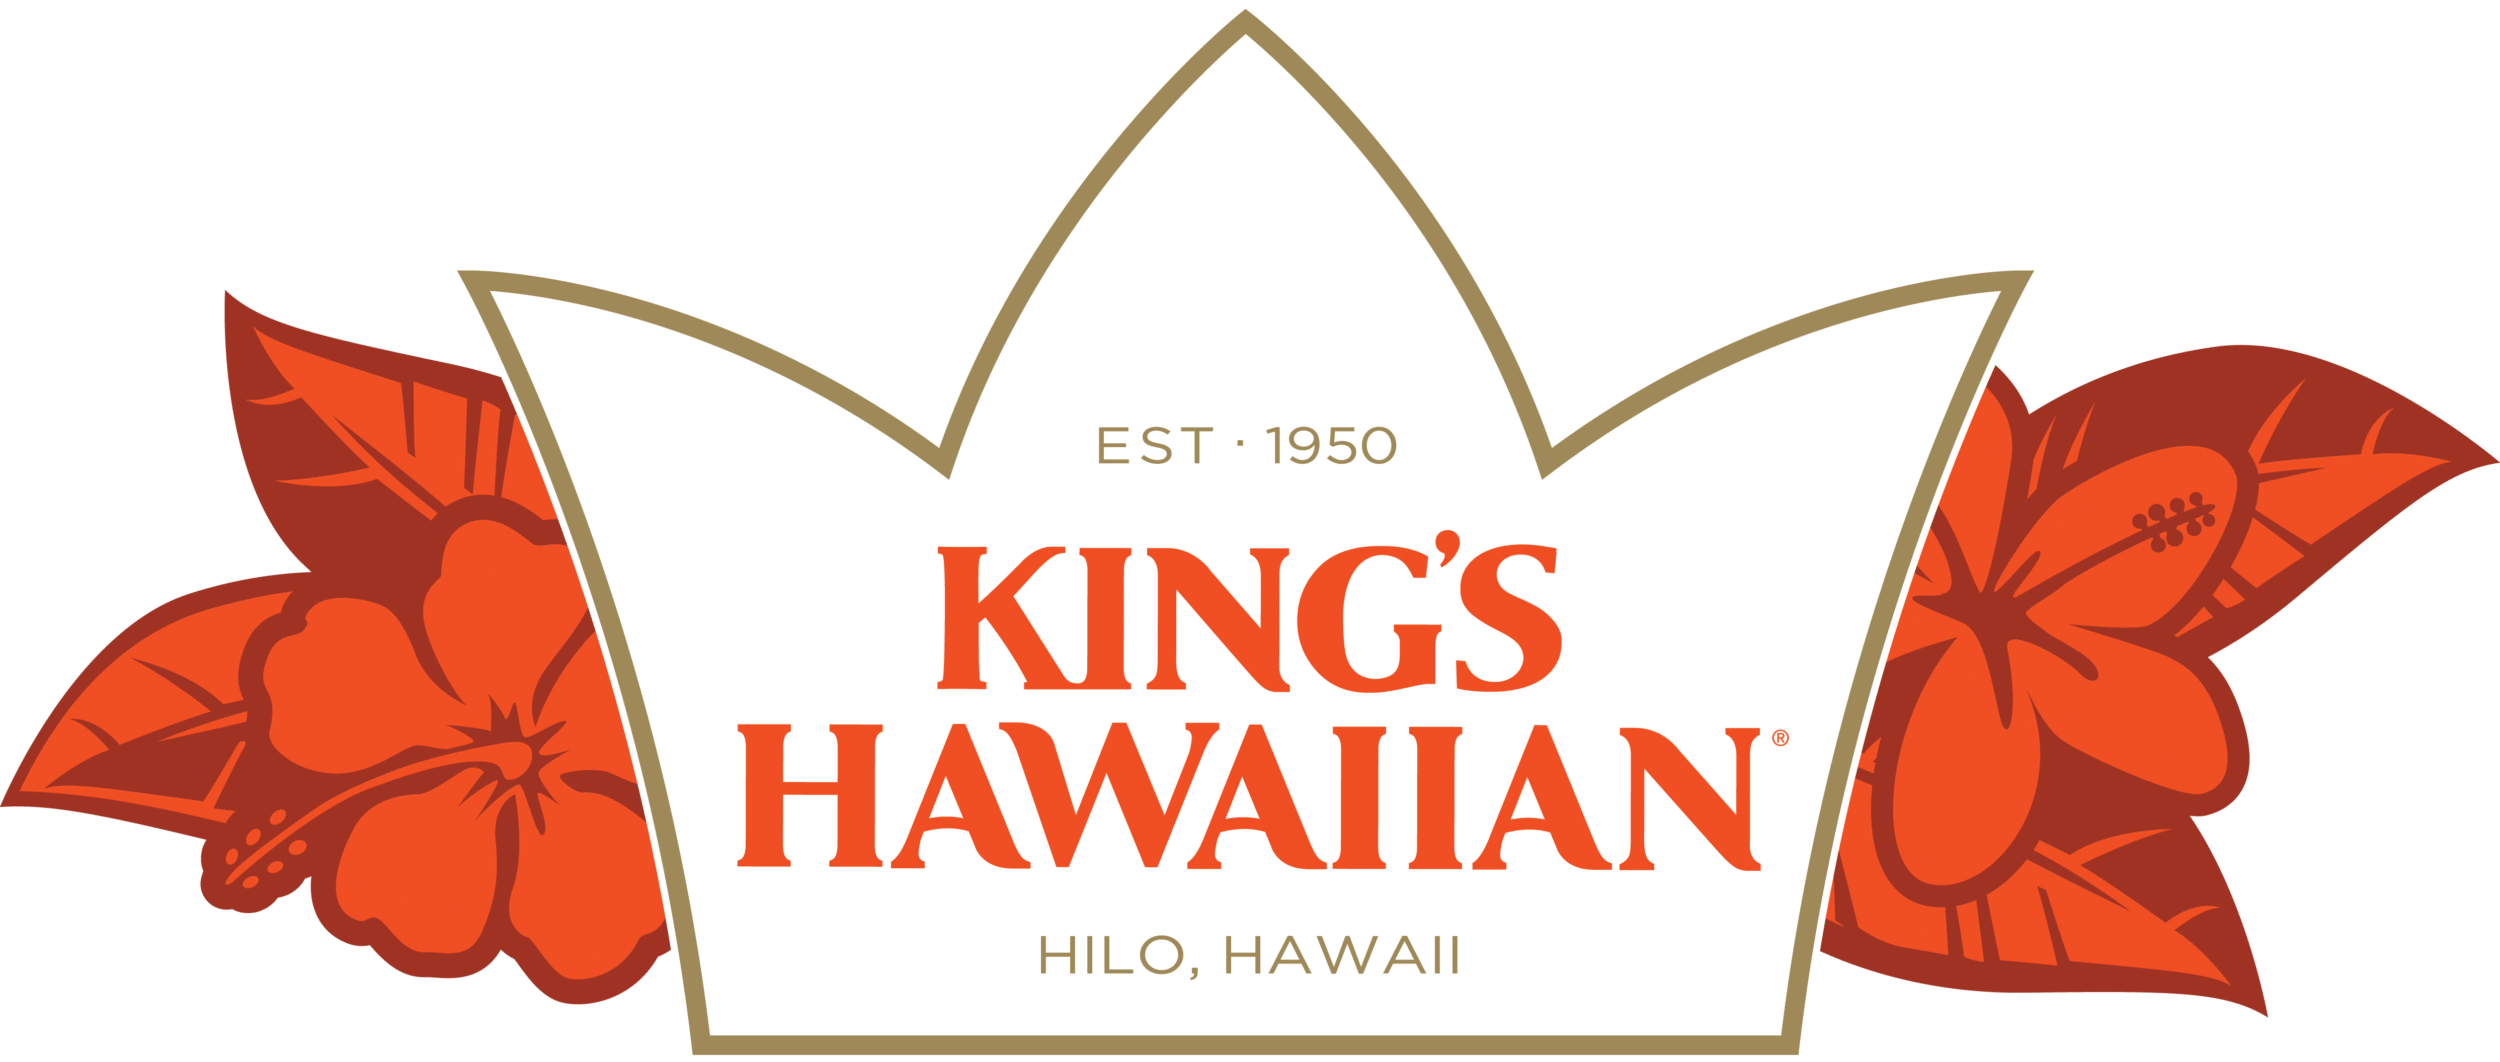 Kings-Hawaiian-logo.png